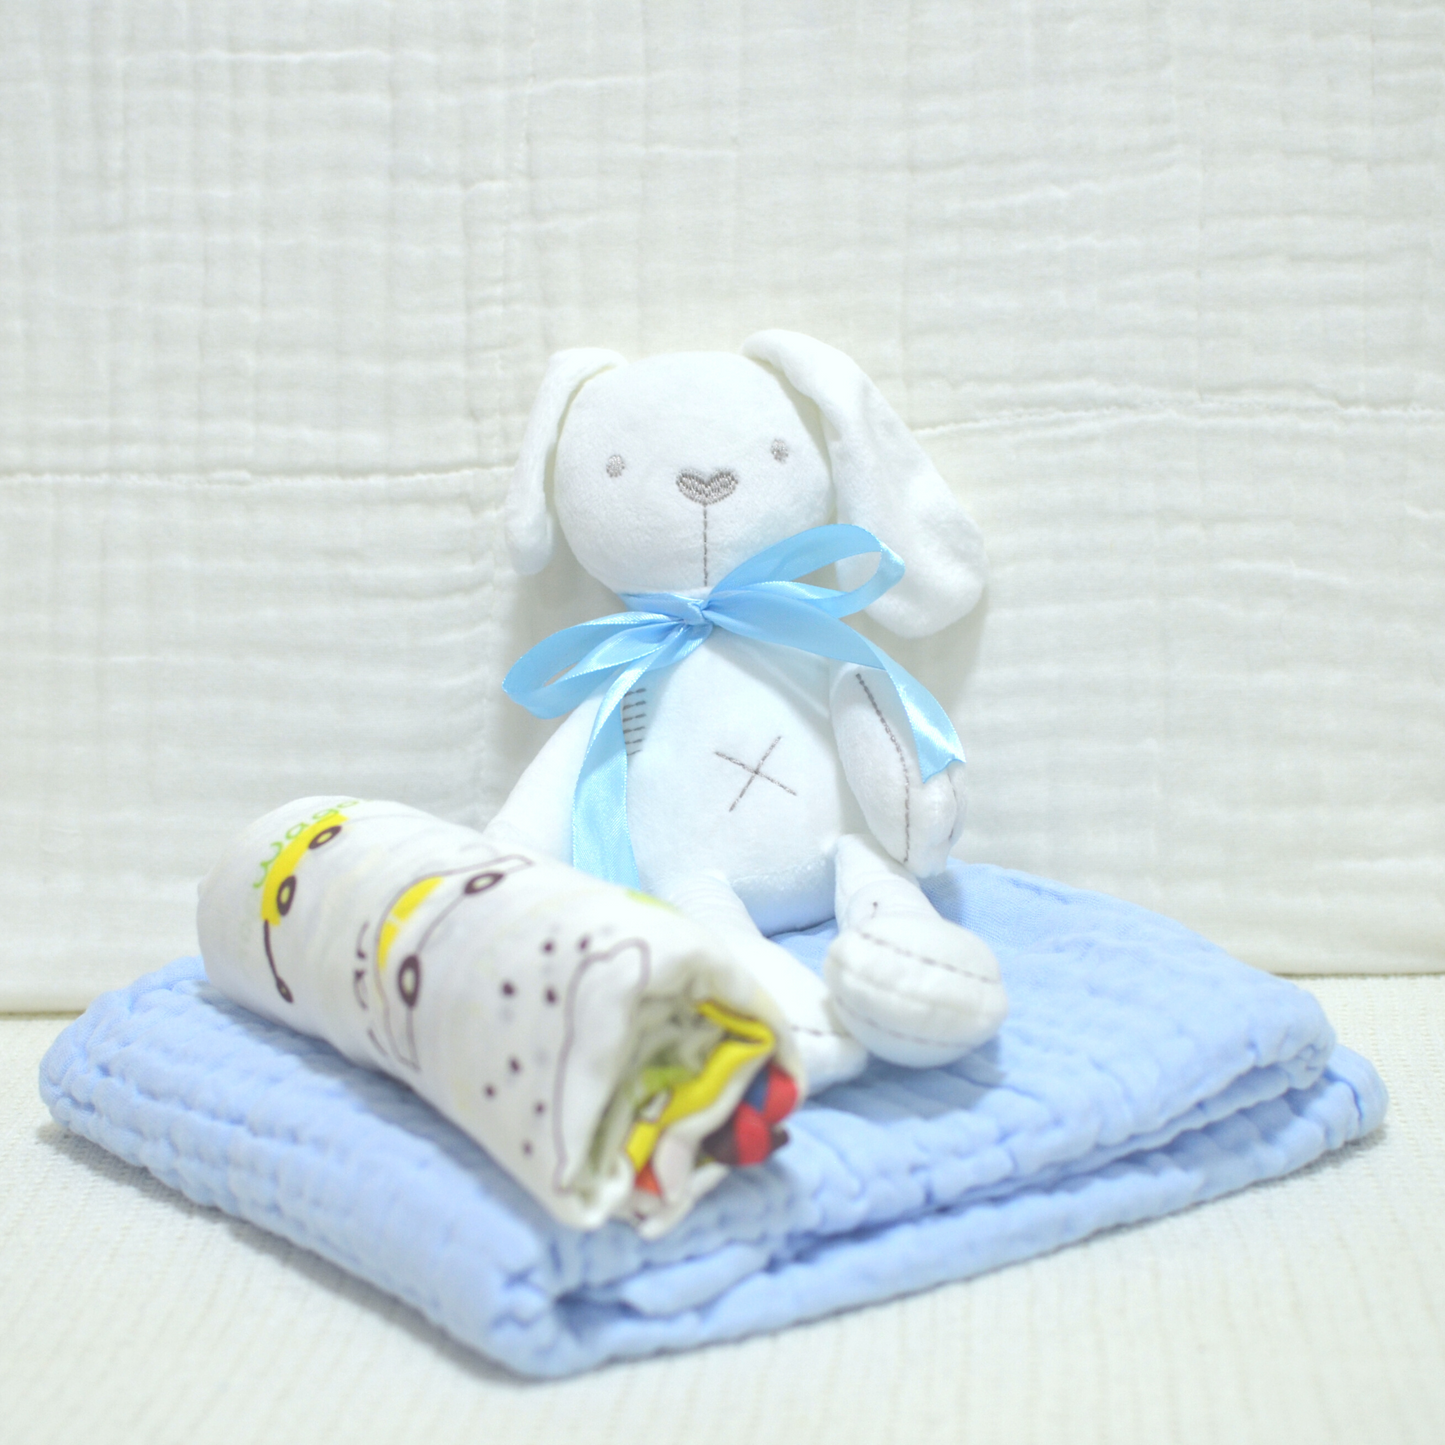 Bunny, Blanket and Towel Bundle